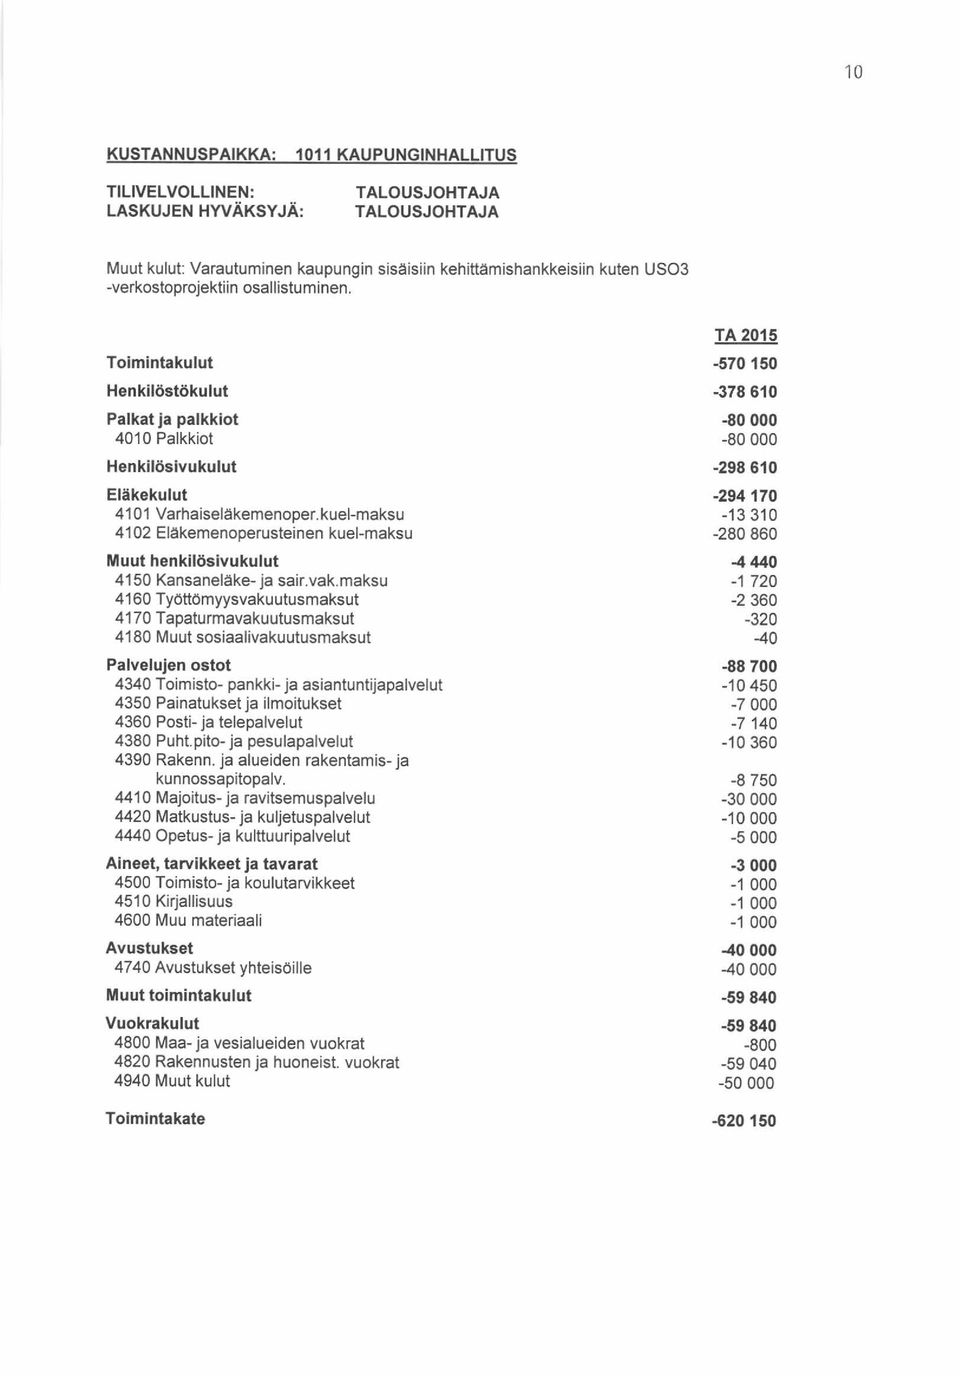 kuel-maksu 4102 Eläkemenoperusteinen kuel-maksu Muut henkilösivukulut 4150 Kansaneläke- ja sair.vak.